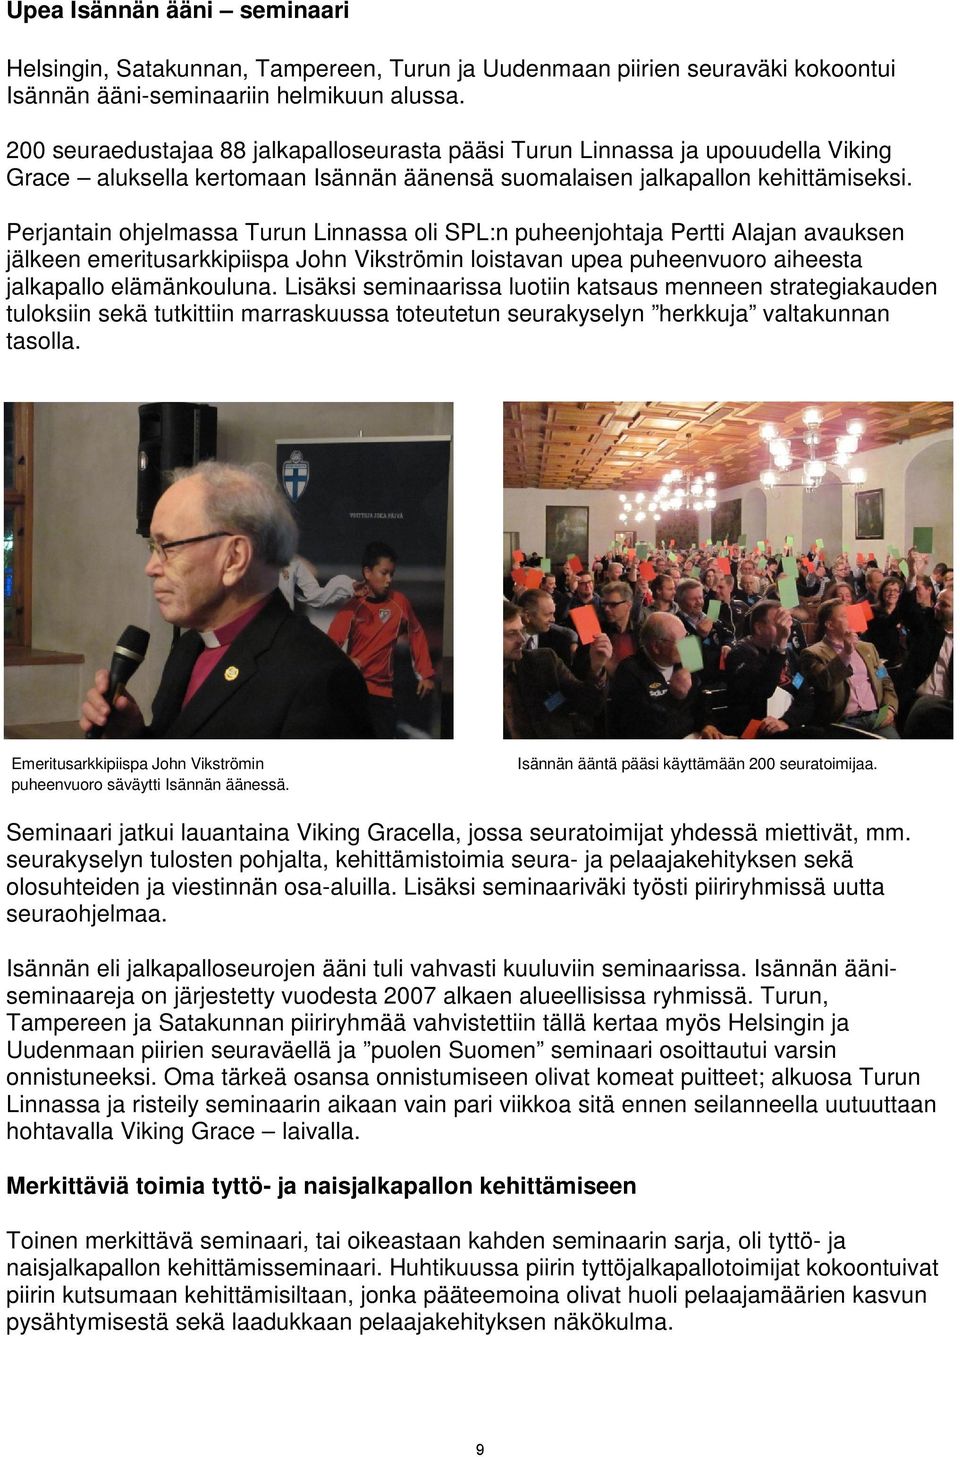 Perjantain ohjelmassa Turun Linnassa oli SPL:n puheenjohtaja Pertti Alajan avauksen jälkeen emeritusarkkipiispa John Vikströmin loistavan upea puheenvuoro aiheesta jalkapallo elämänkouluna.